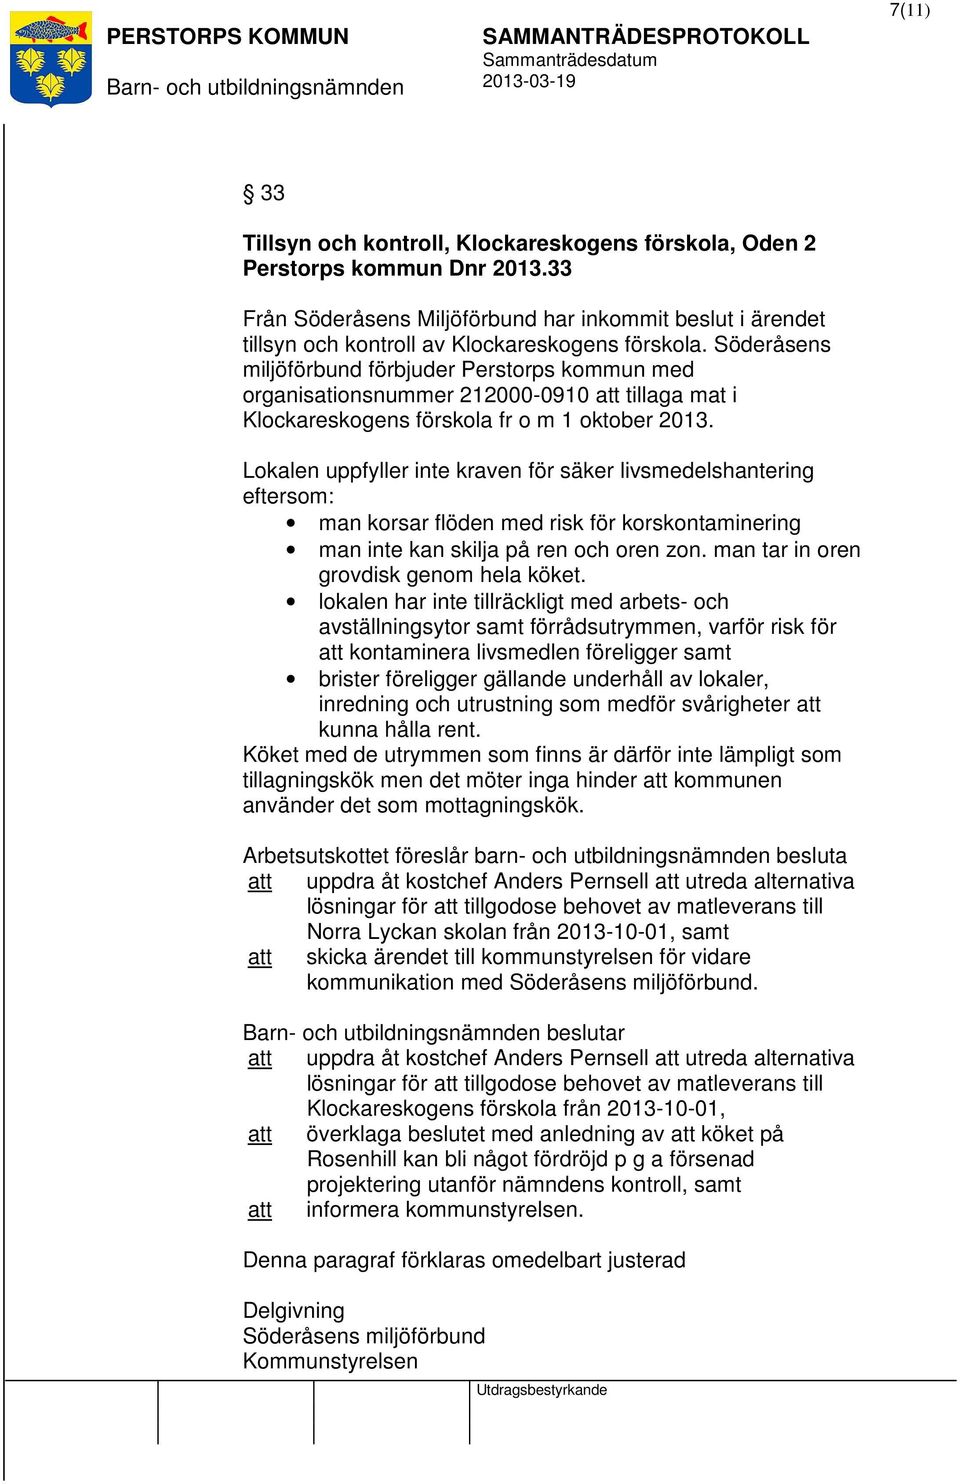 Söderåsens miljöförbund förbjuder Perstorps kommun med organisationsnummer 212000-0910 tillaga mat i Klockareskogens förskola fr o m 1 oktober 2013.